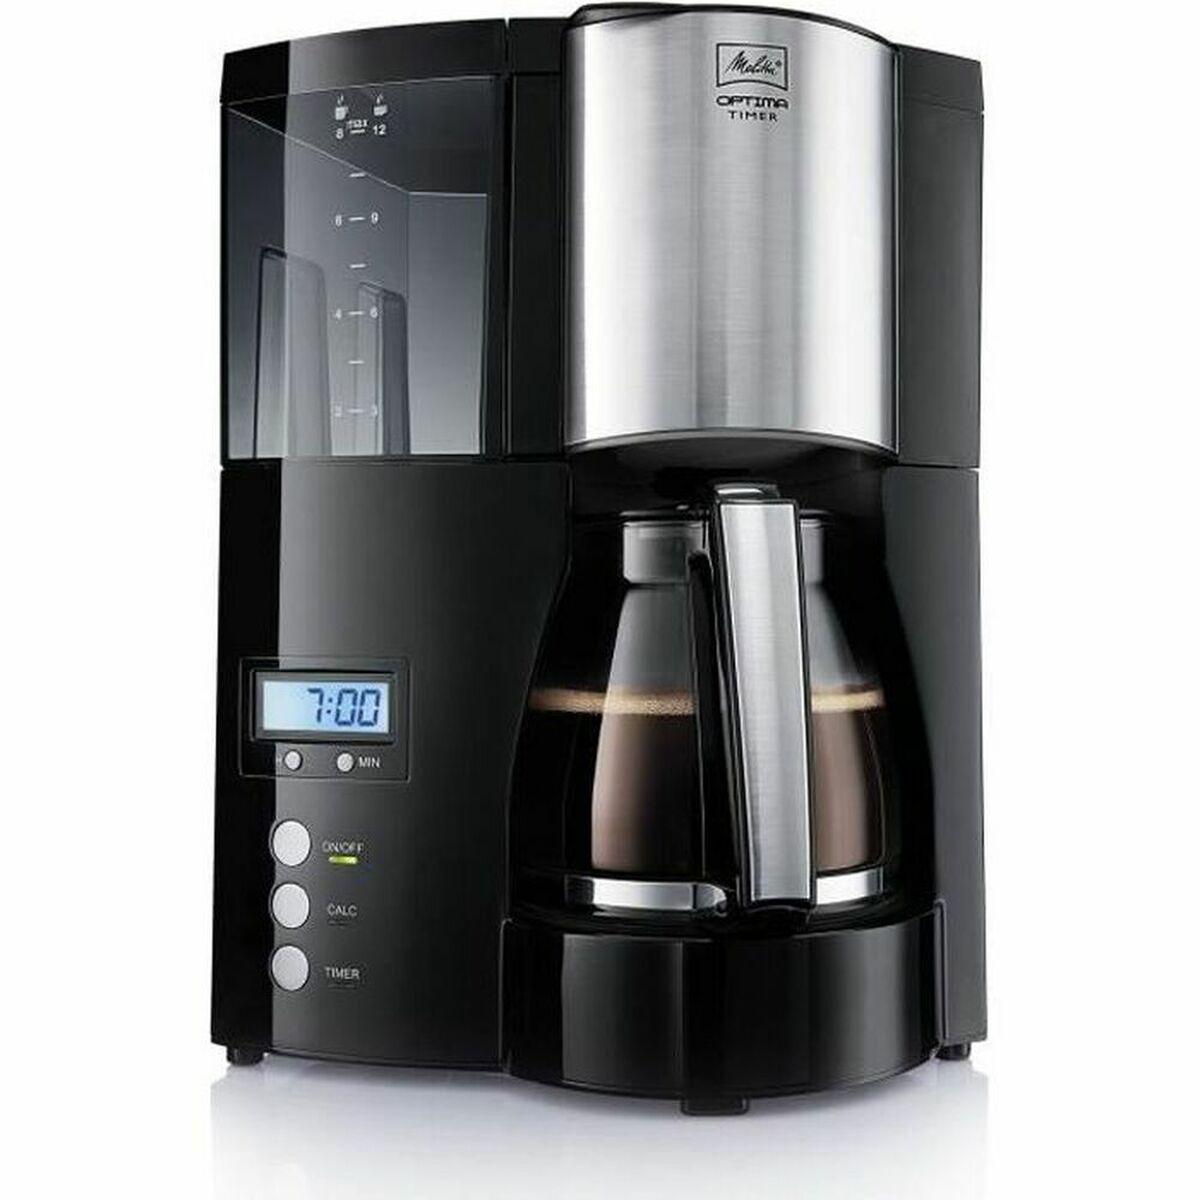 Sante & Beaute Melitta 100801 850 W 1 L Drip Coffee Maker Black 850 W 1 L